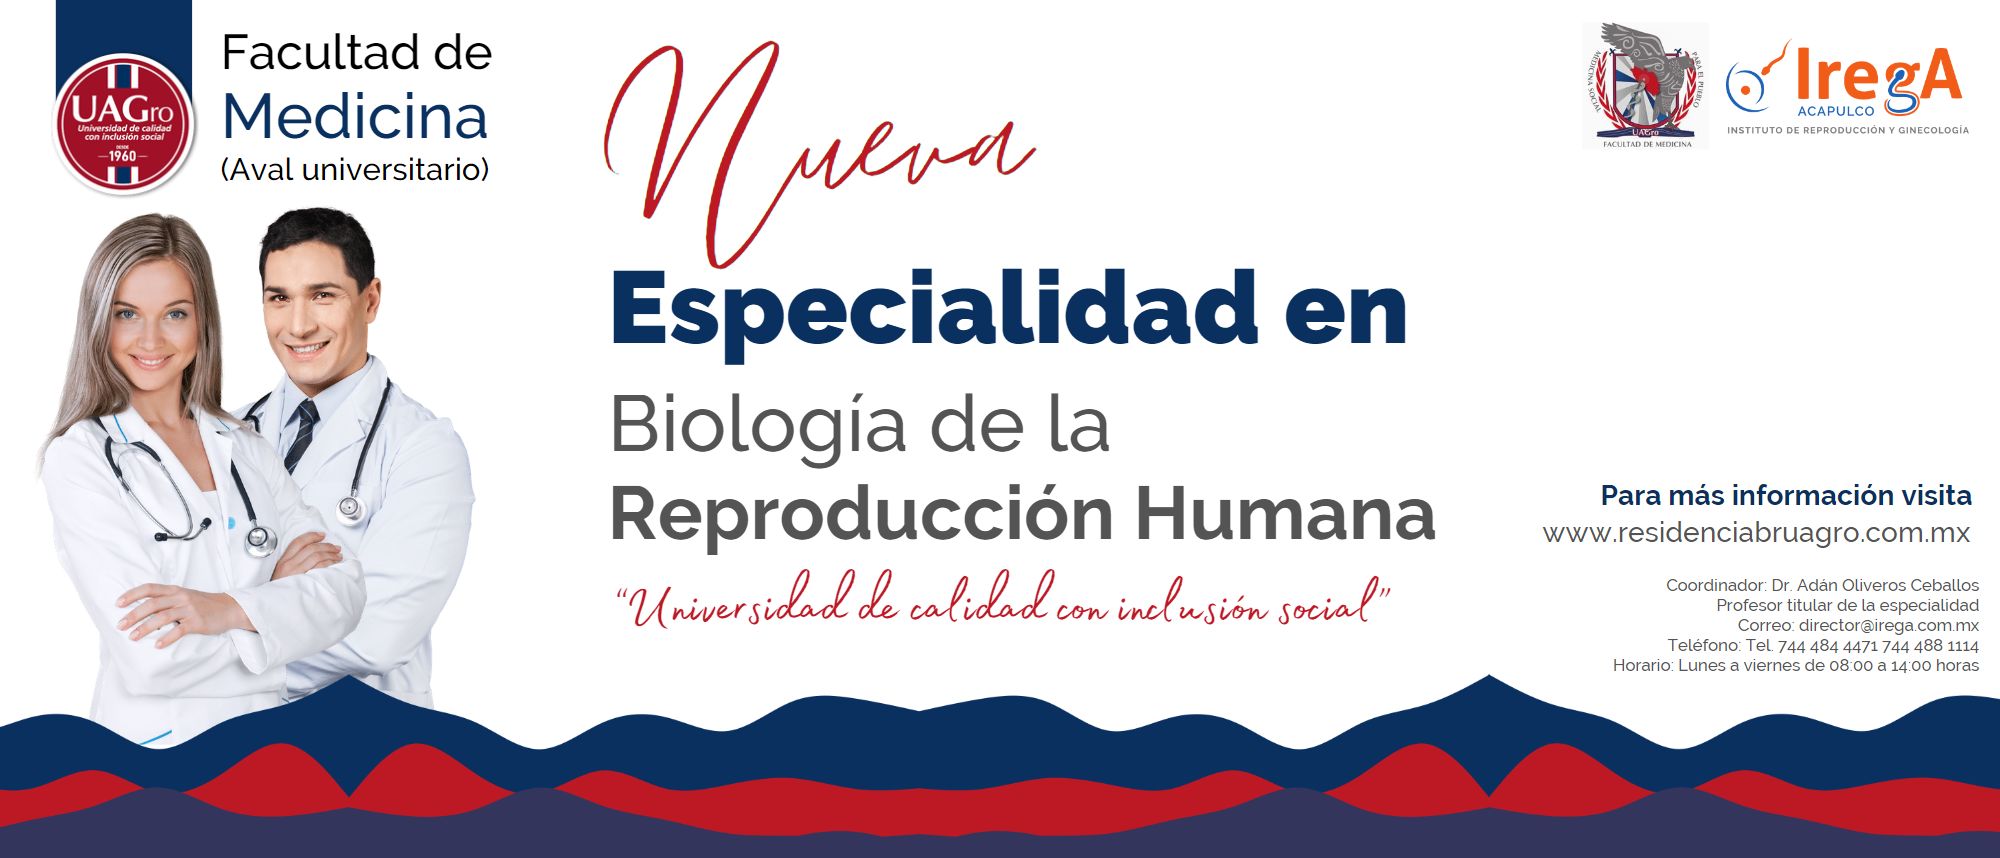 Especialidad UAGRO Biologia de la Reproducción Humana